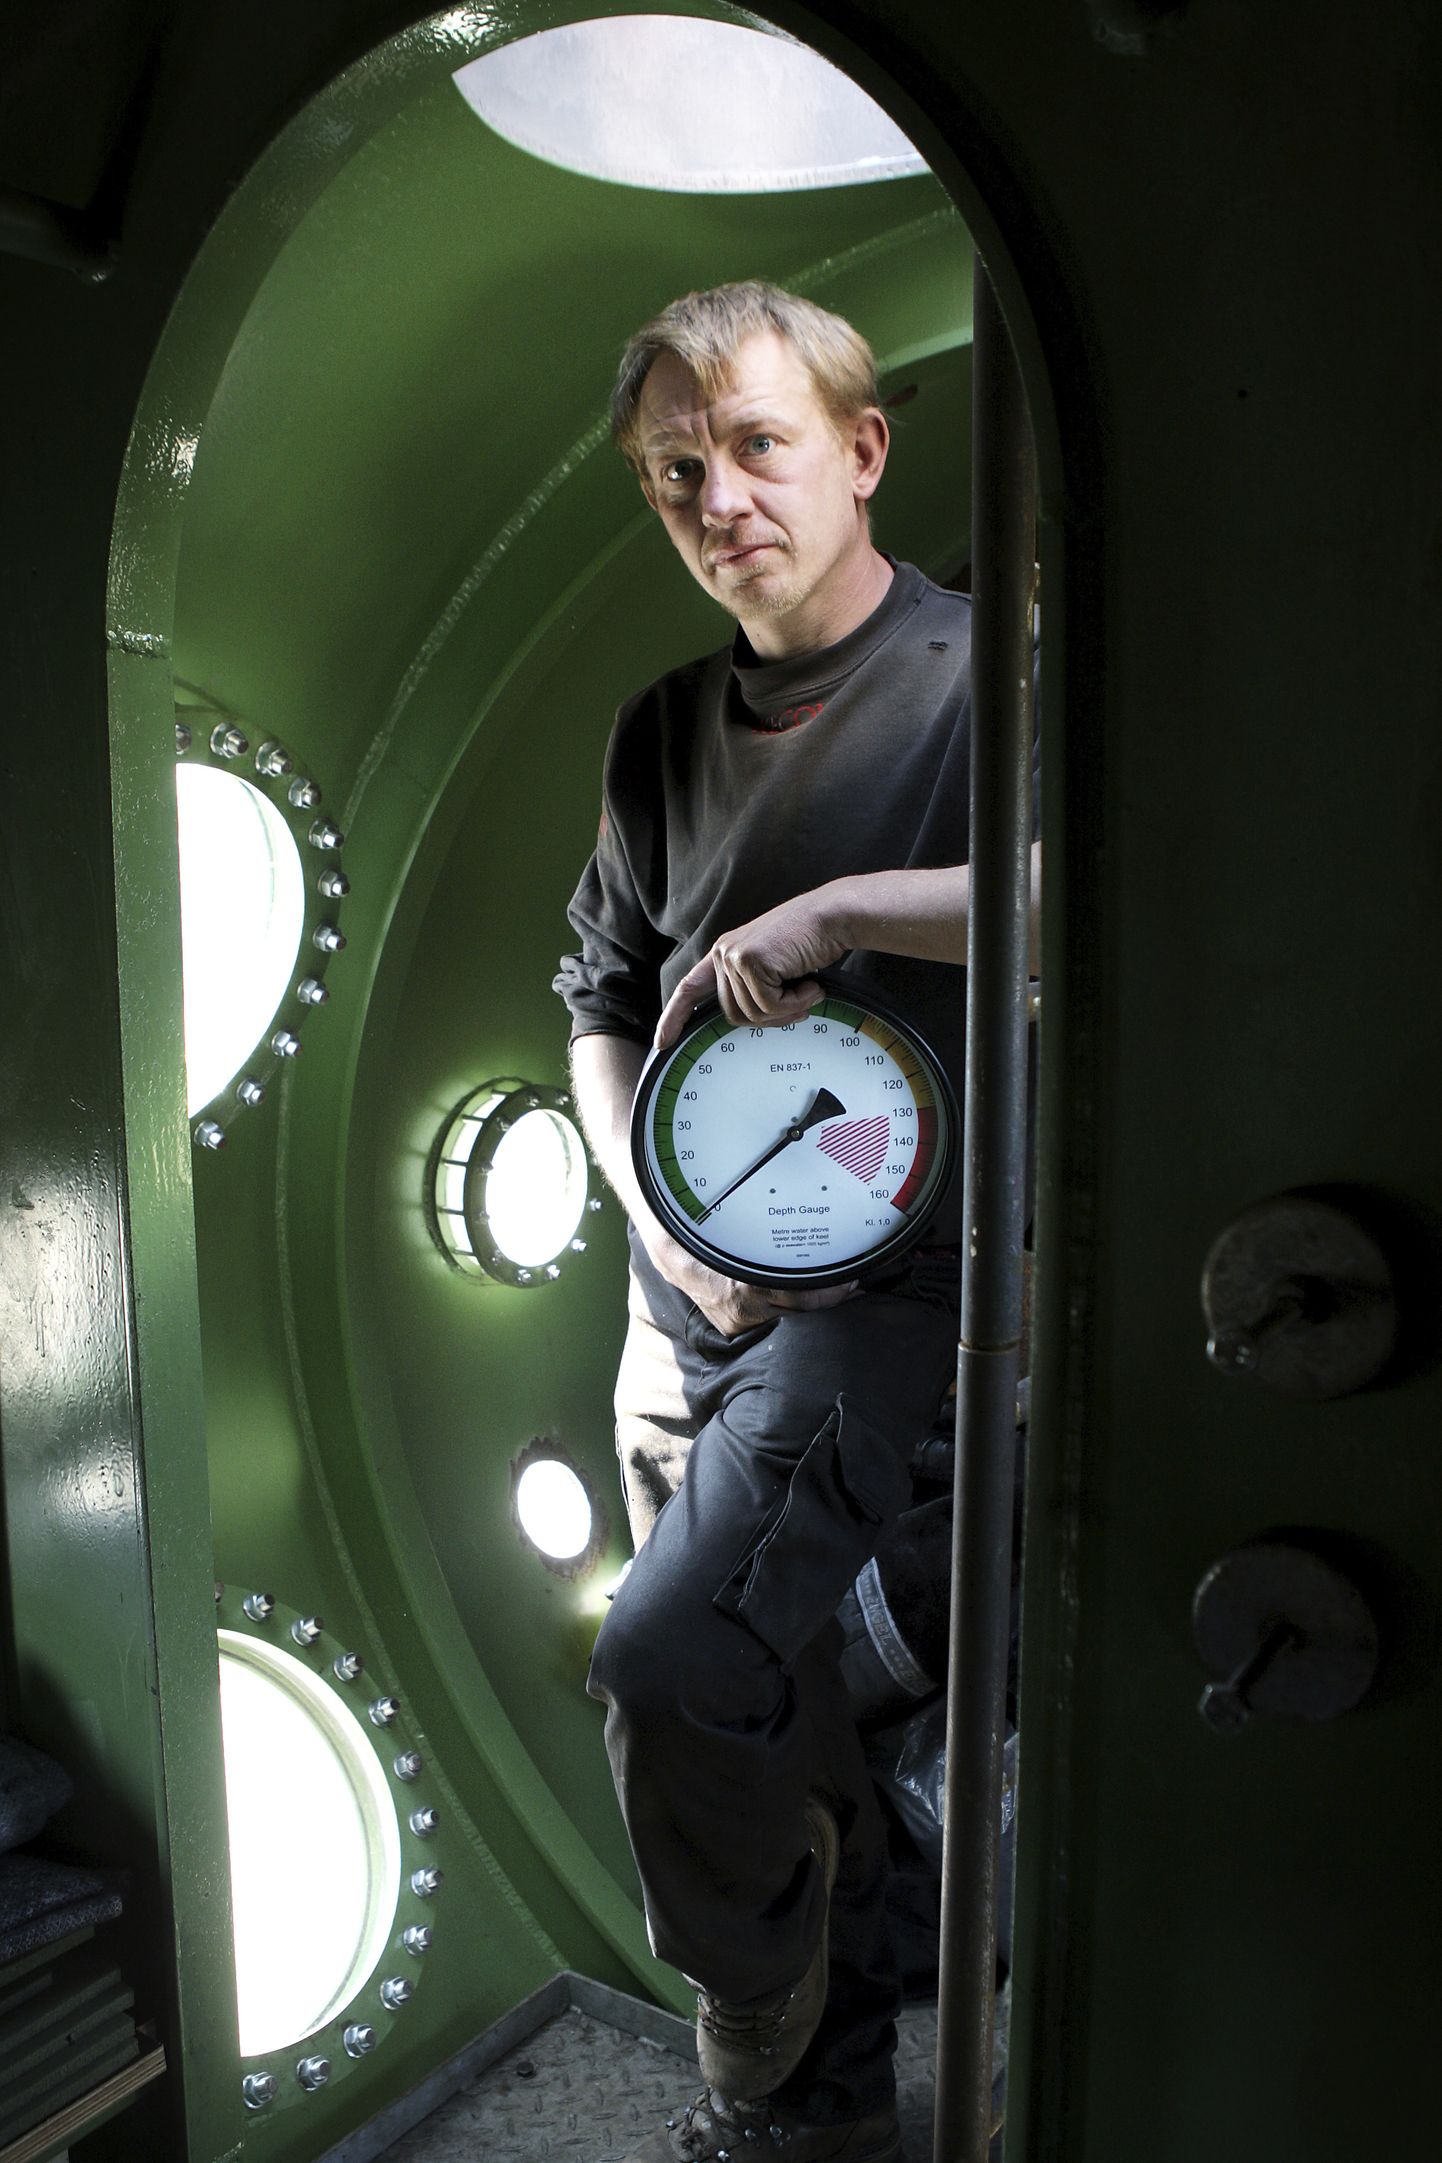 Taani leiutaja ja ärimees Peter Madsen aprillis 2008 enda ehitatud allveelaevast välja vaatamas. Ta mõrvas 2017. aasta augustis rootslannast ajakirjaniku Kim Walli ja kannab eluaegset vanglakaristust.